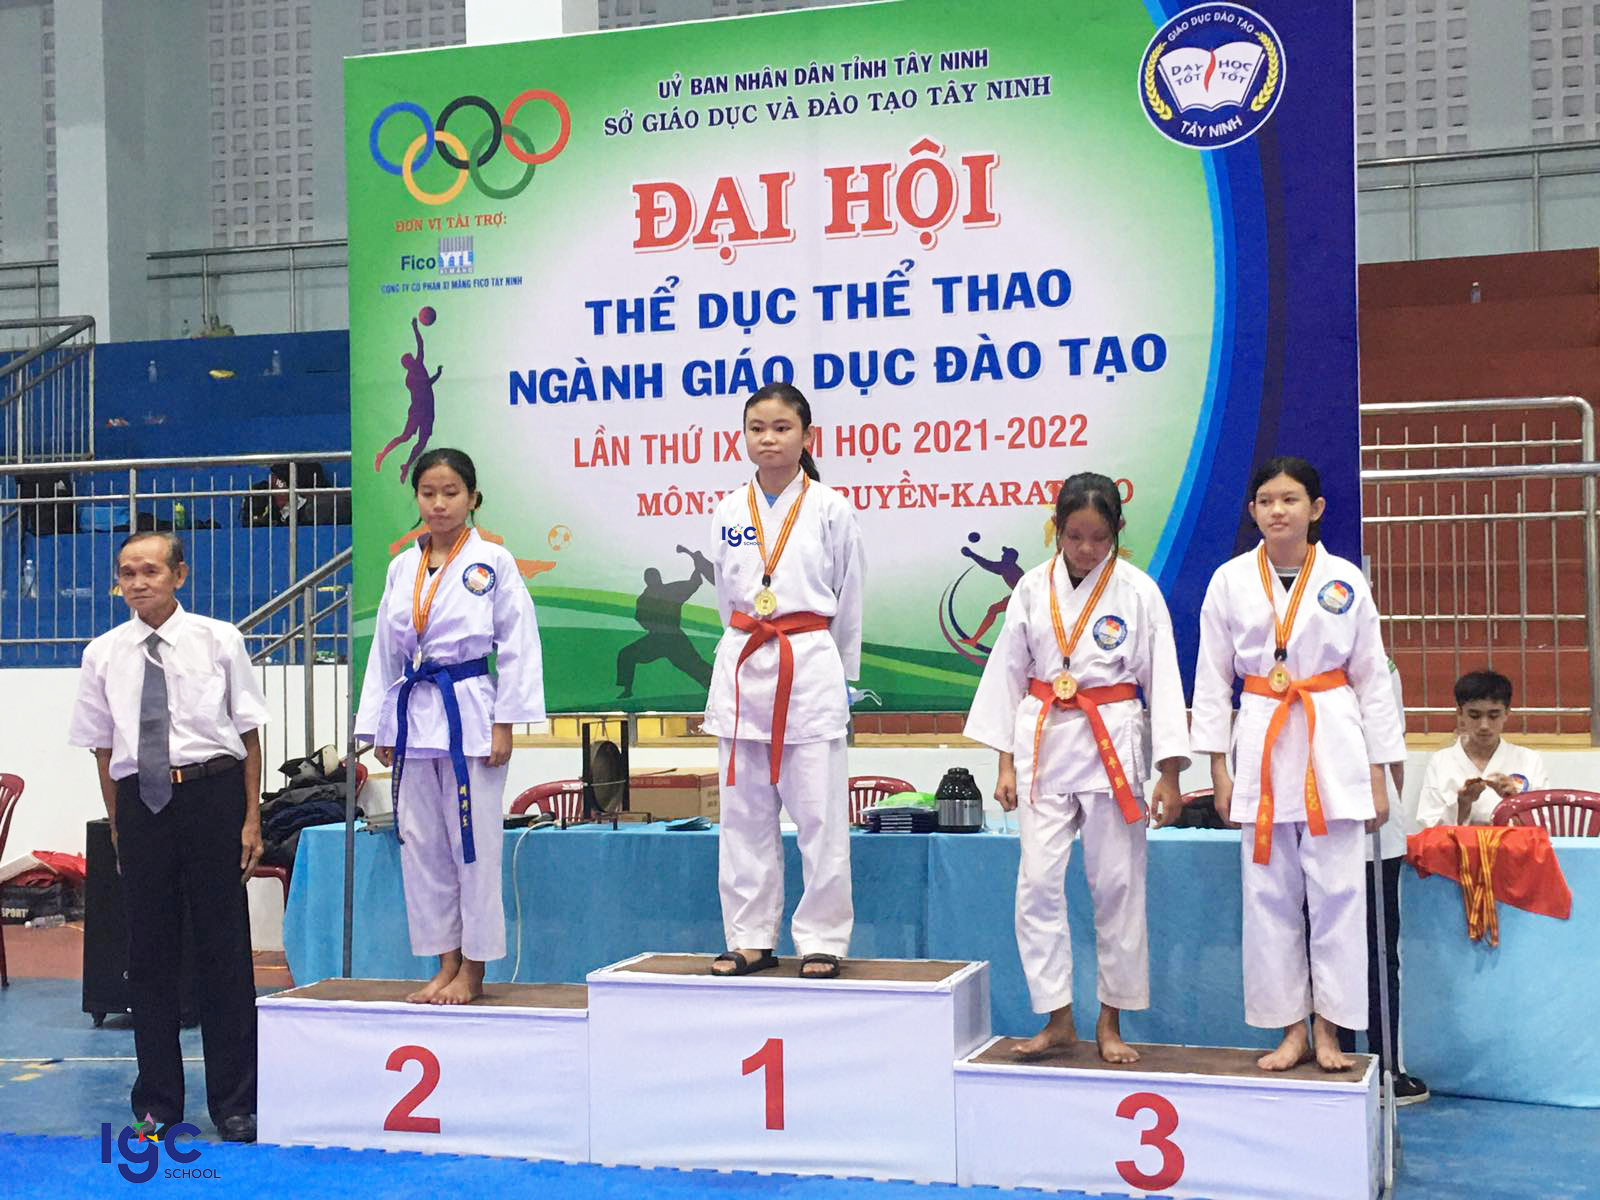 Học sinh: Đặng Ngọc Tường Vy. Đạt huy chương vàng nội dung đối kháng 44kg Nữ (Võ) - HKPĐ tỉnh Tây Ninh năm 2022